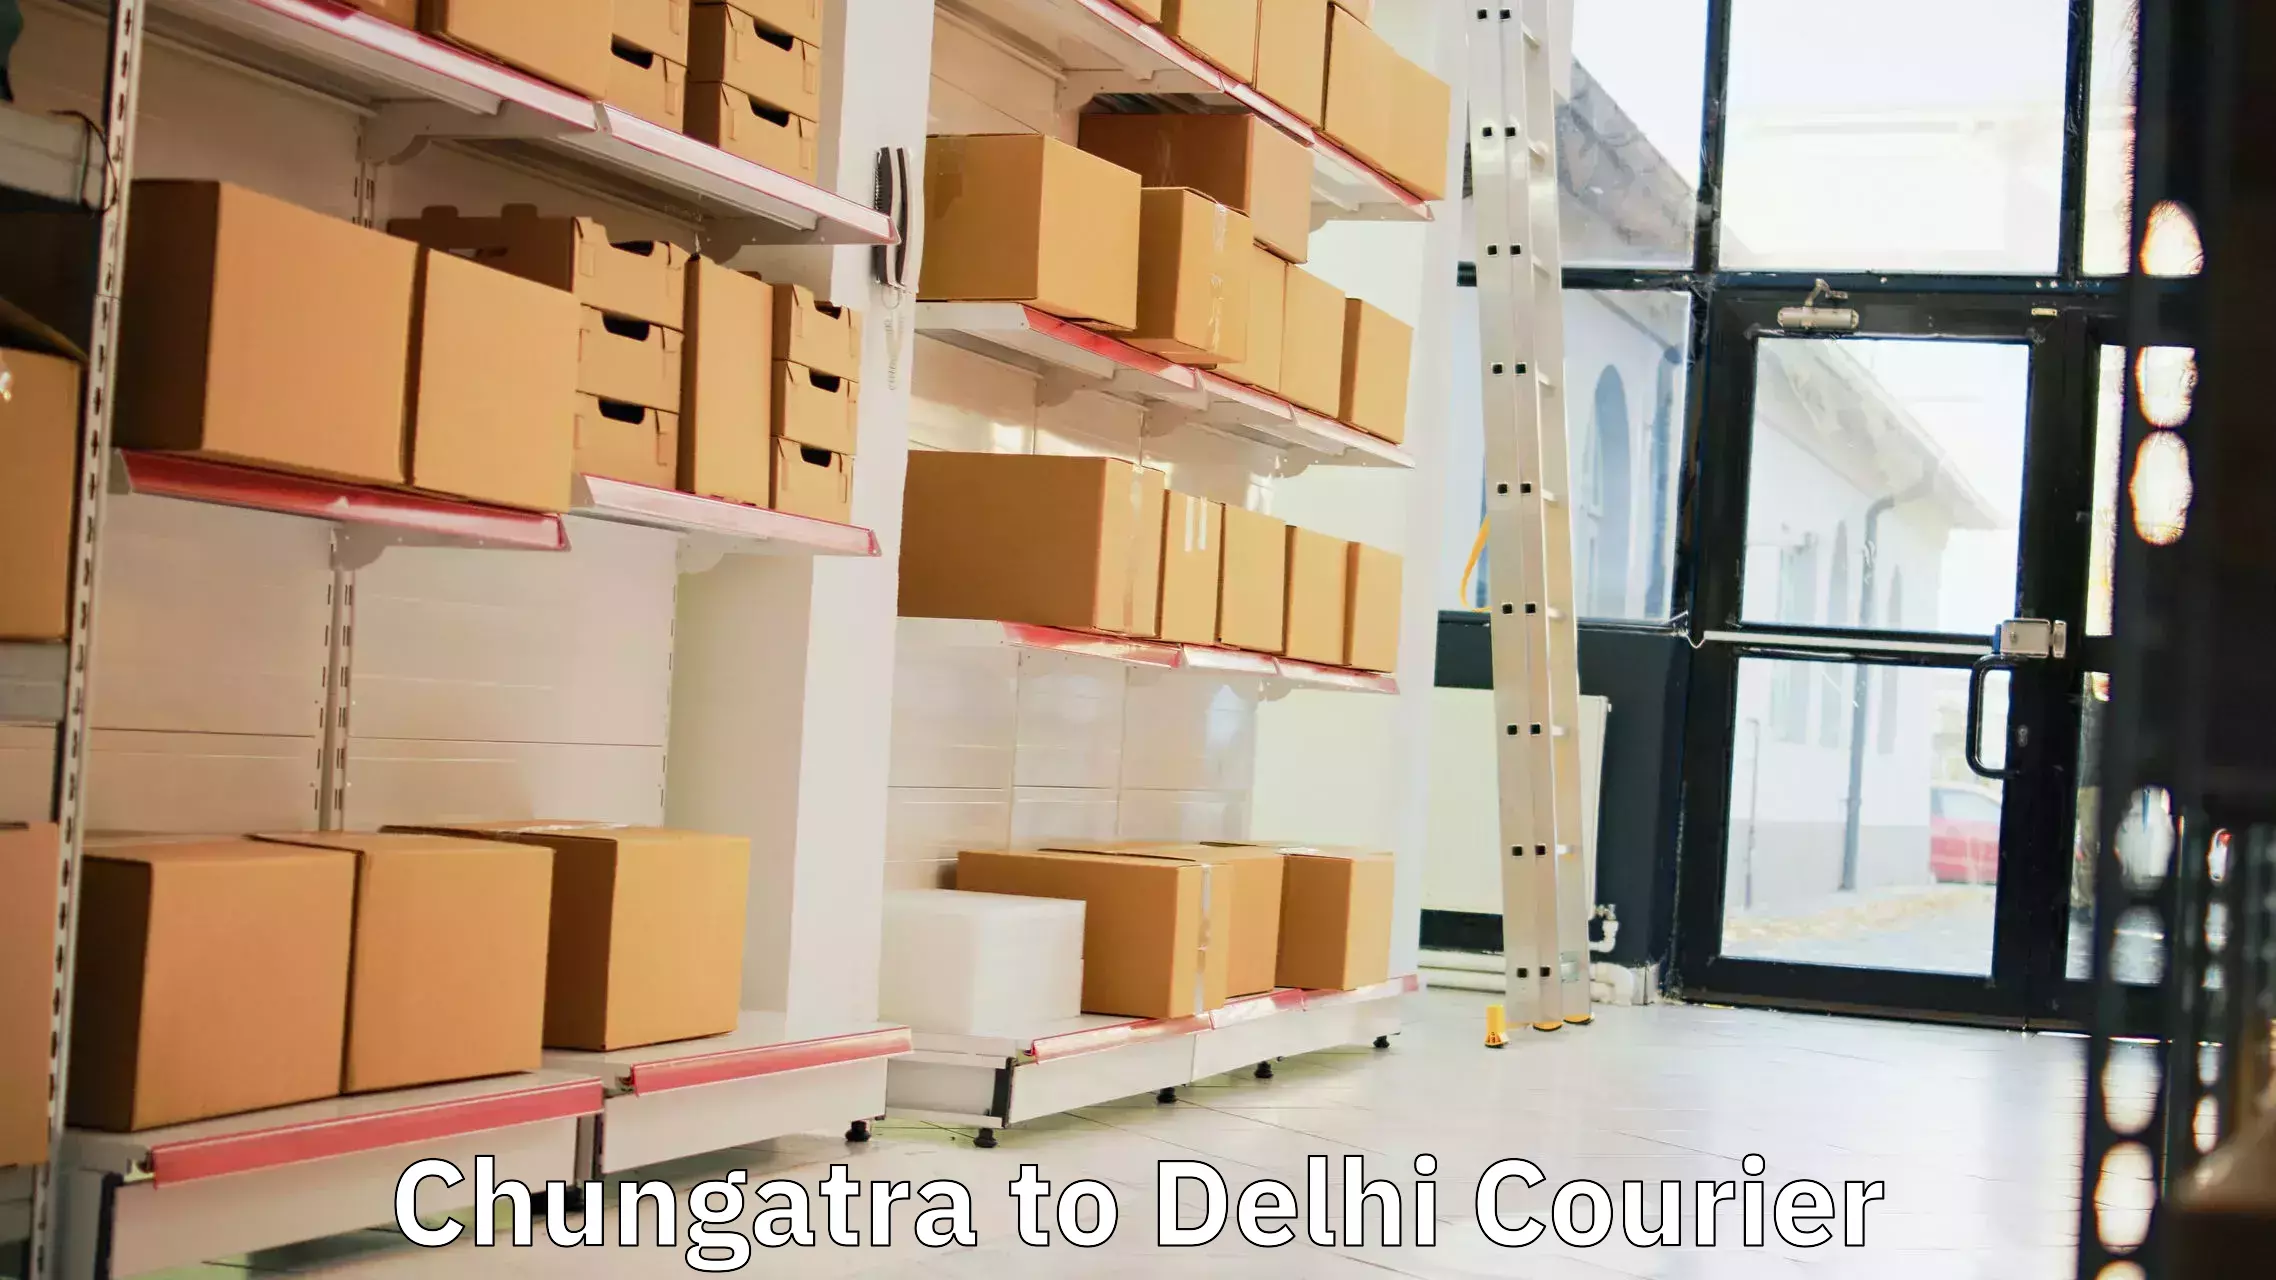 Advanced courier platforms Chungatra to Delhi